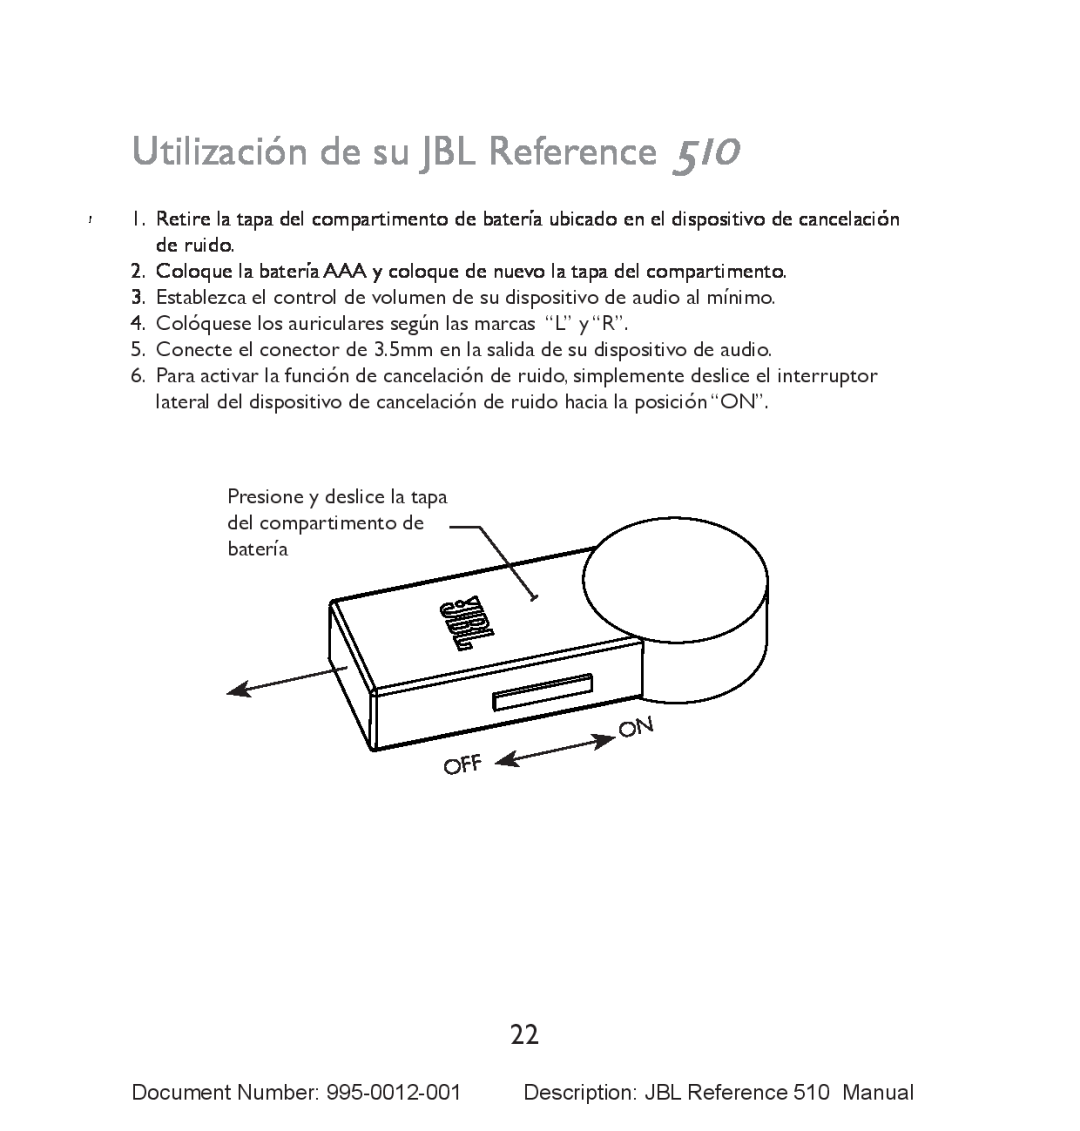 JBL 510 manual Utilización de su JBL Reference 